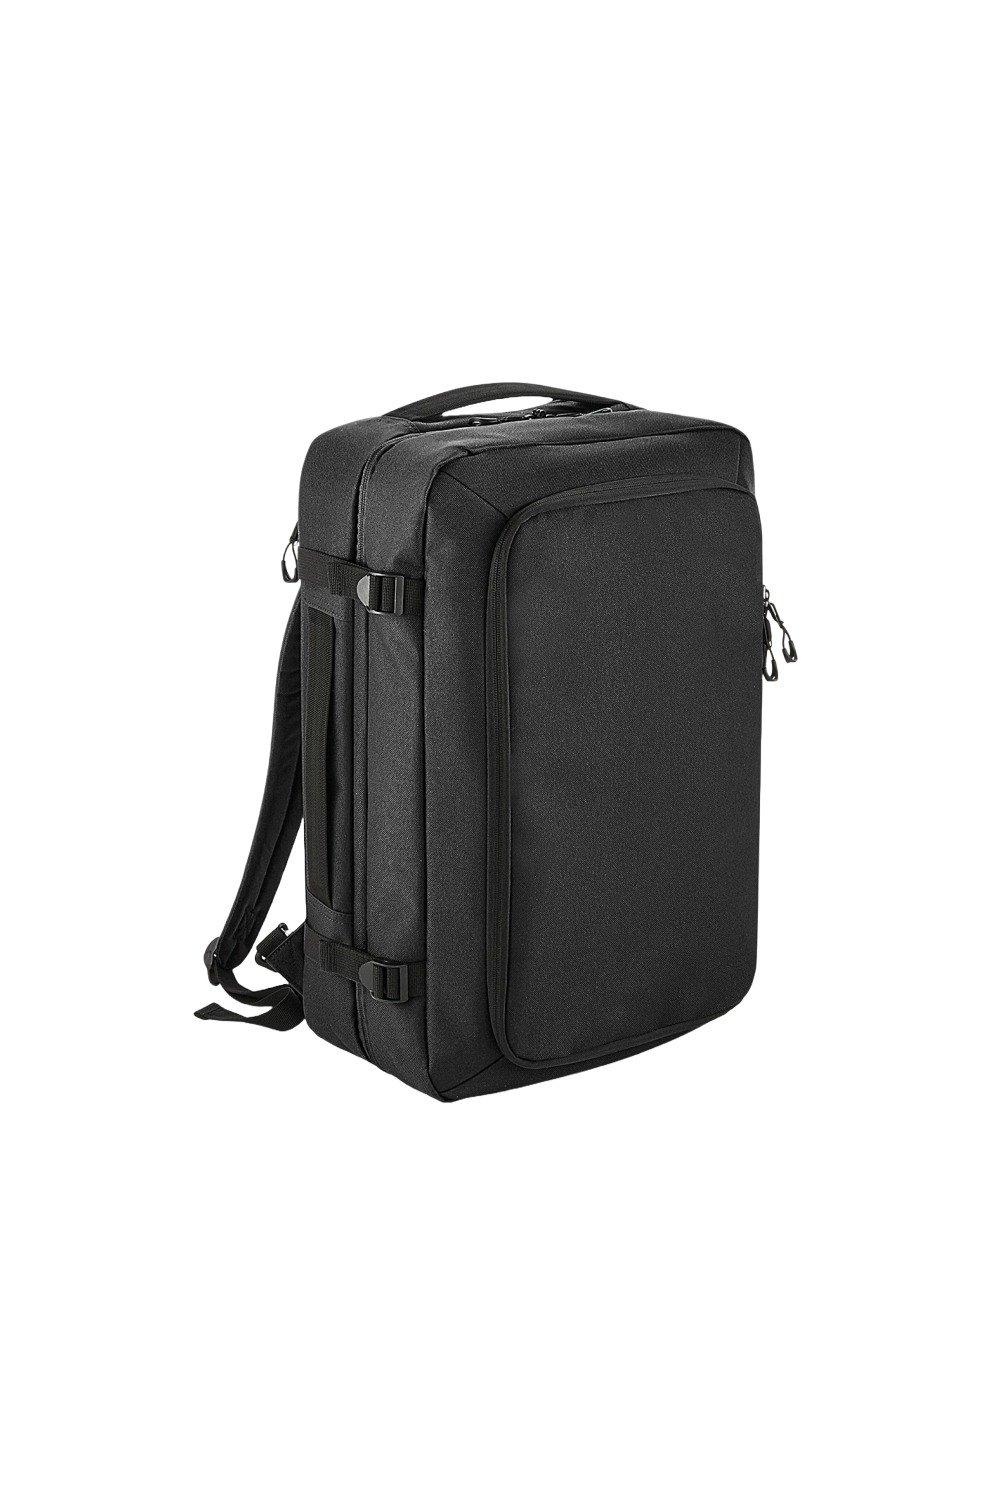 Рюкзак для ручной клади Escape Bagbase, черный